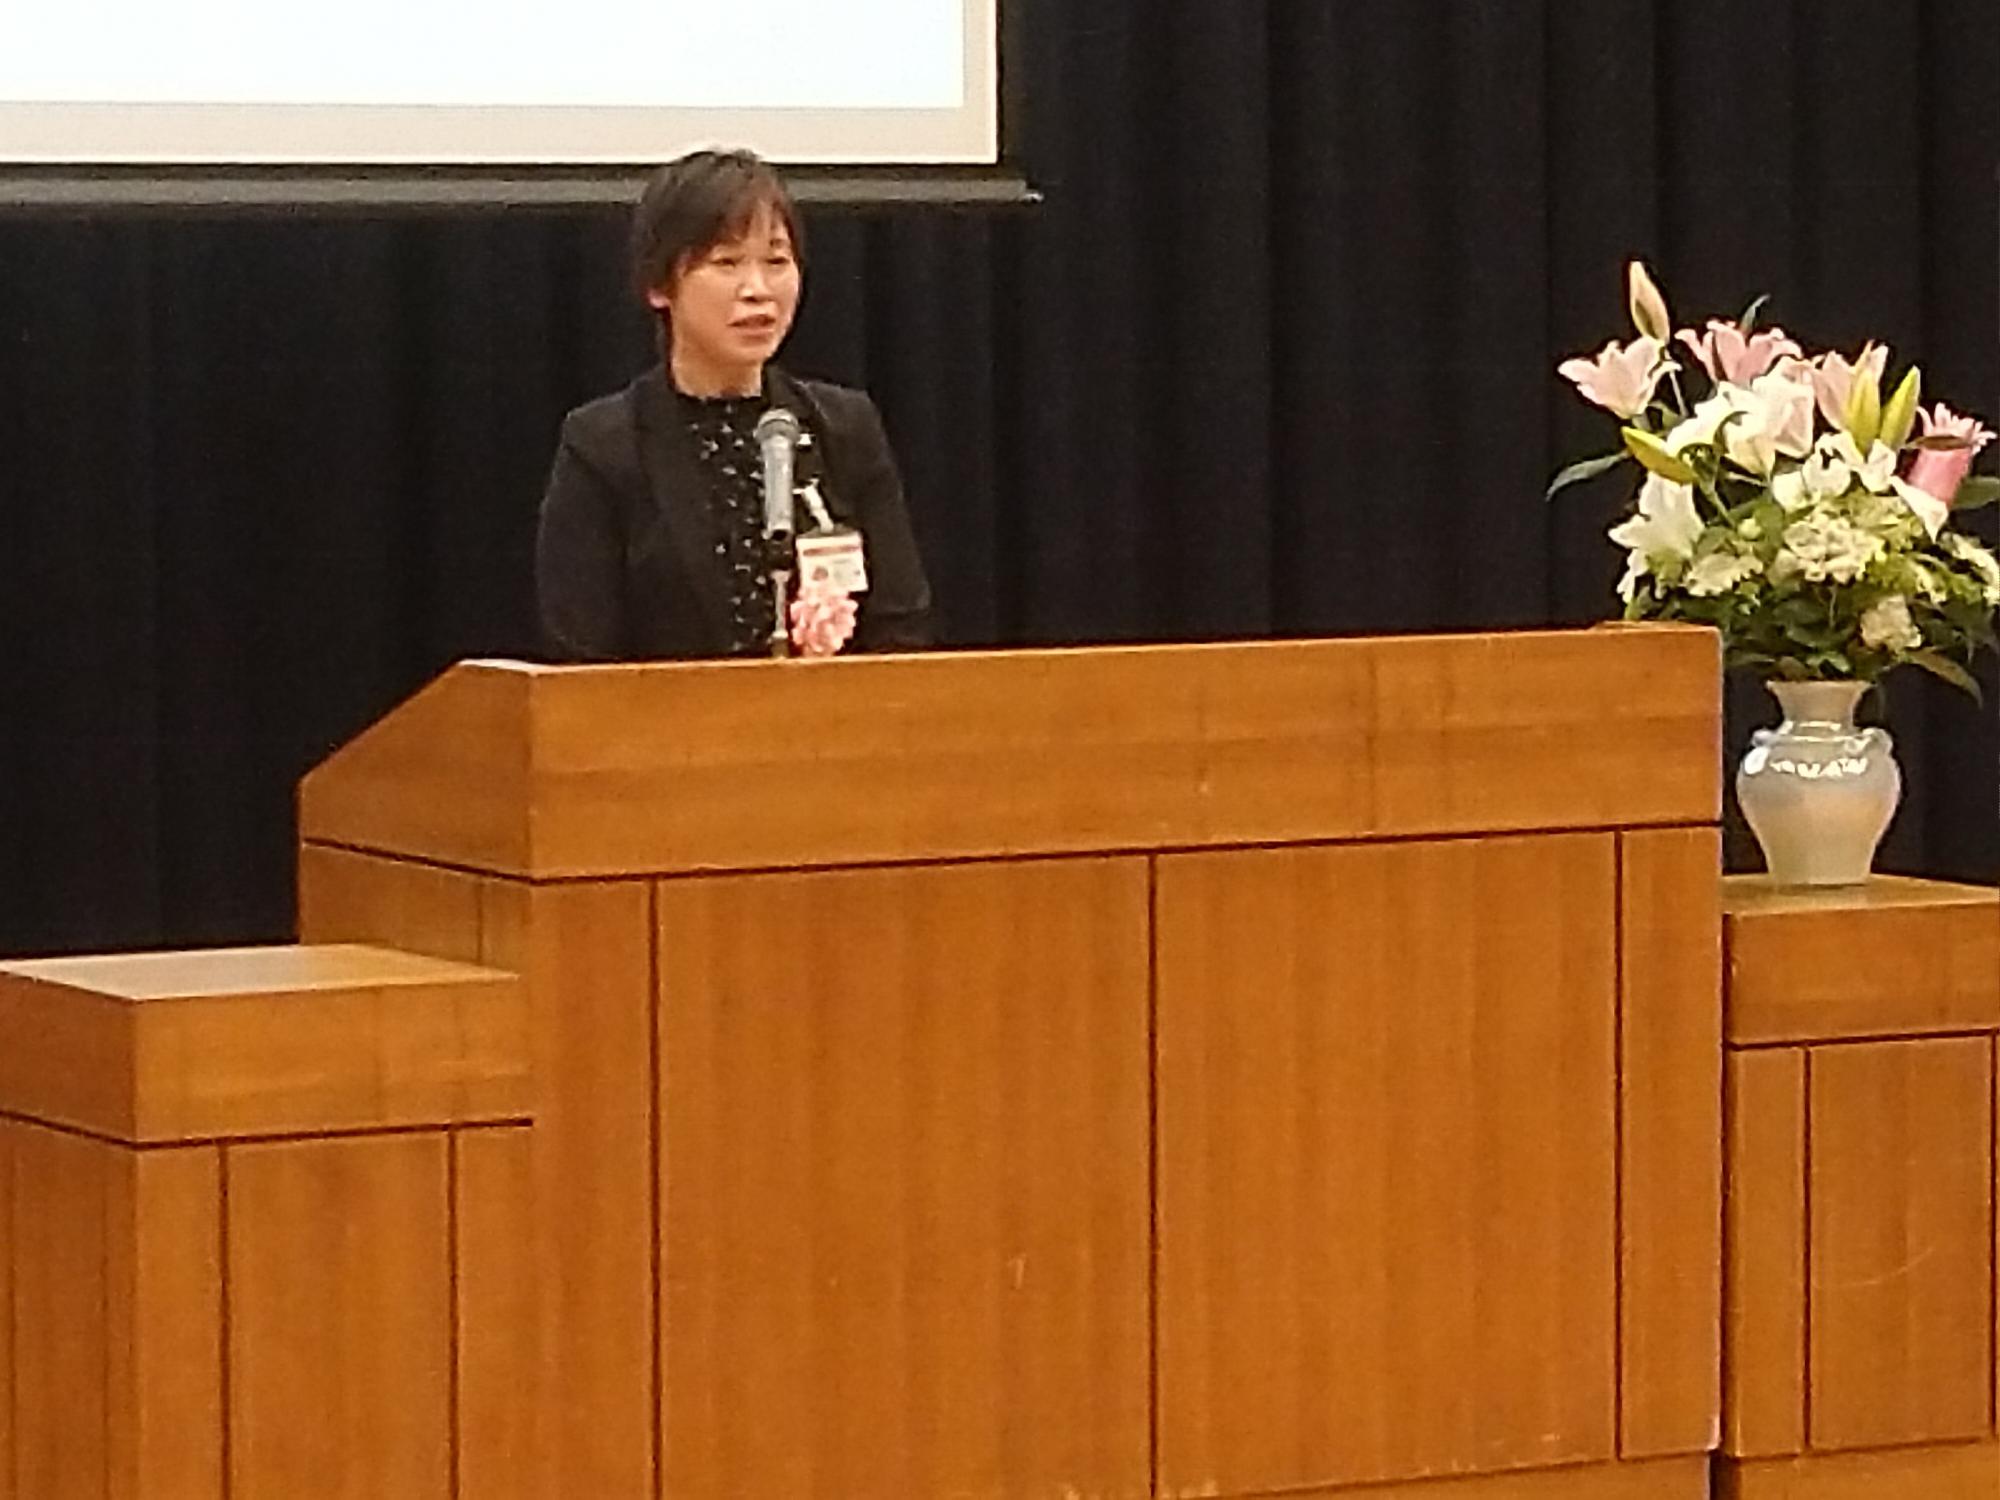 5月16日開講式で祝辞を述べる生涯学習課長(教育長代理)の写真